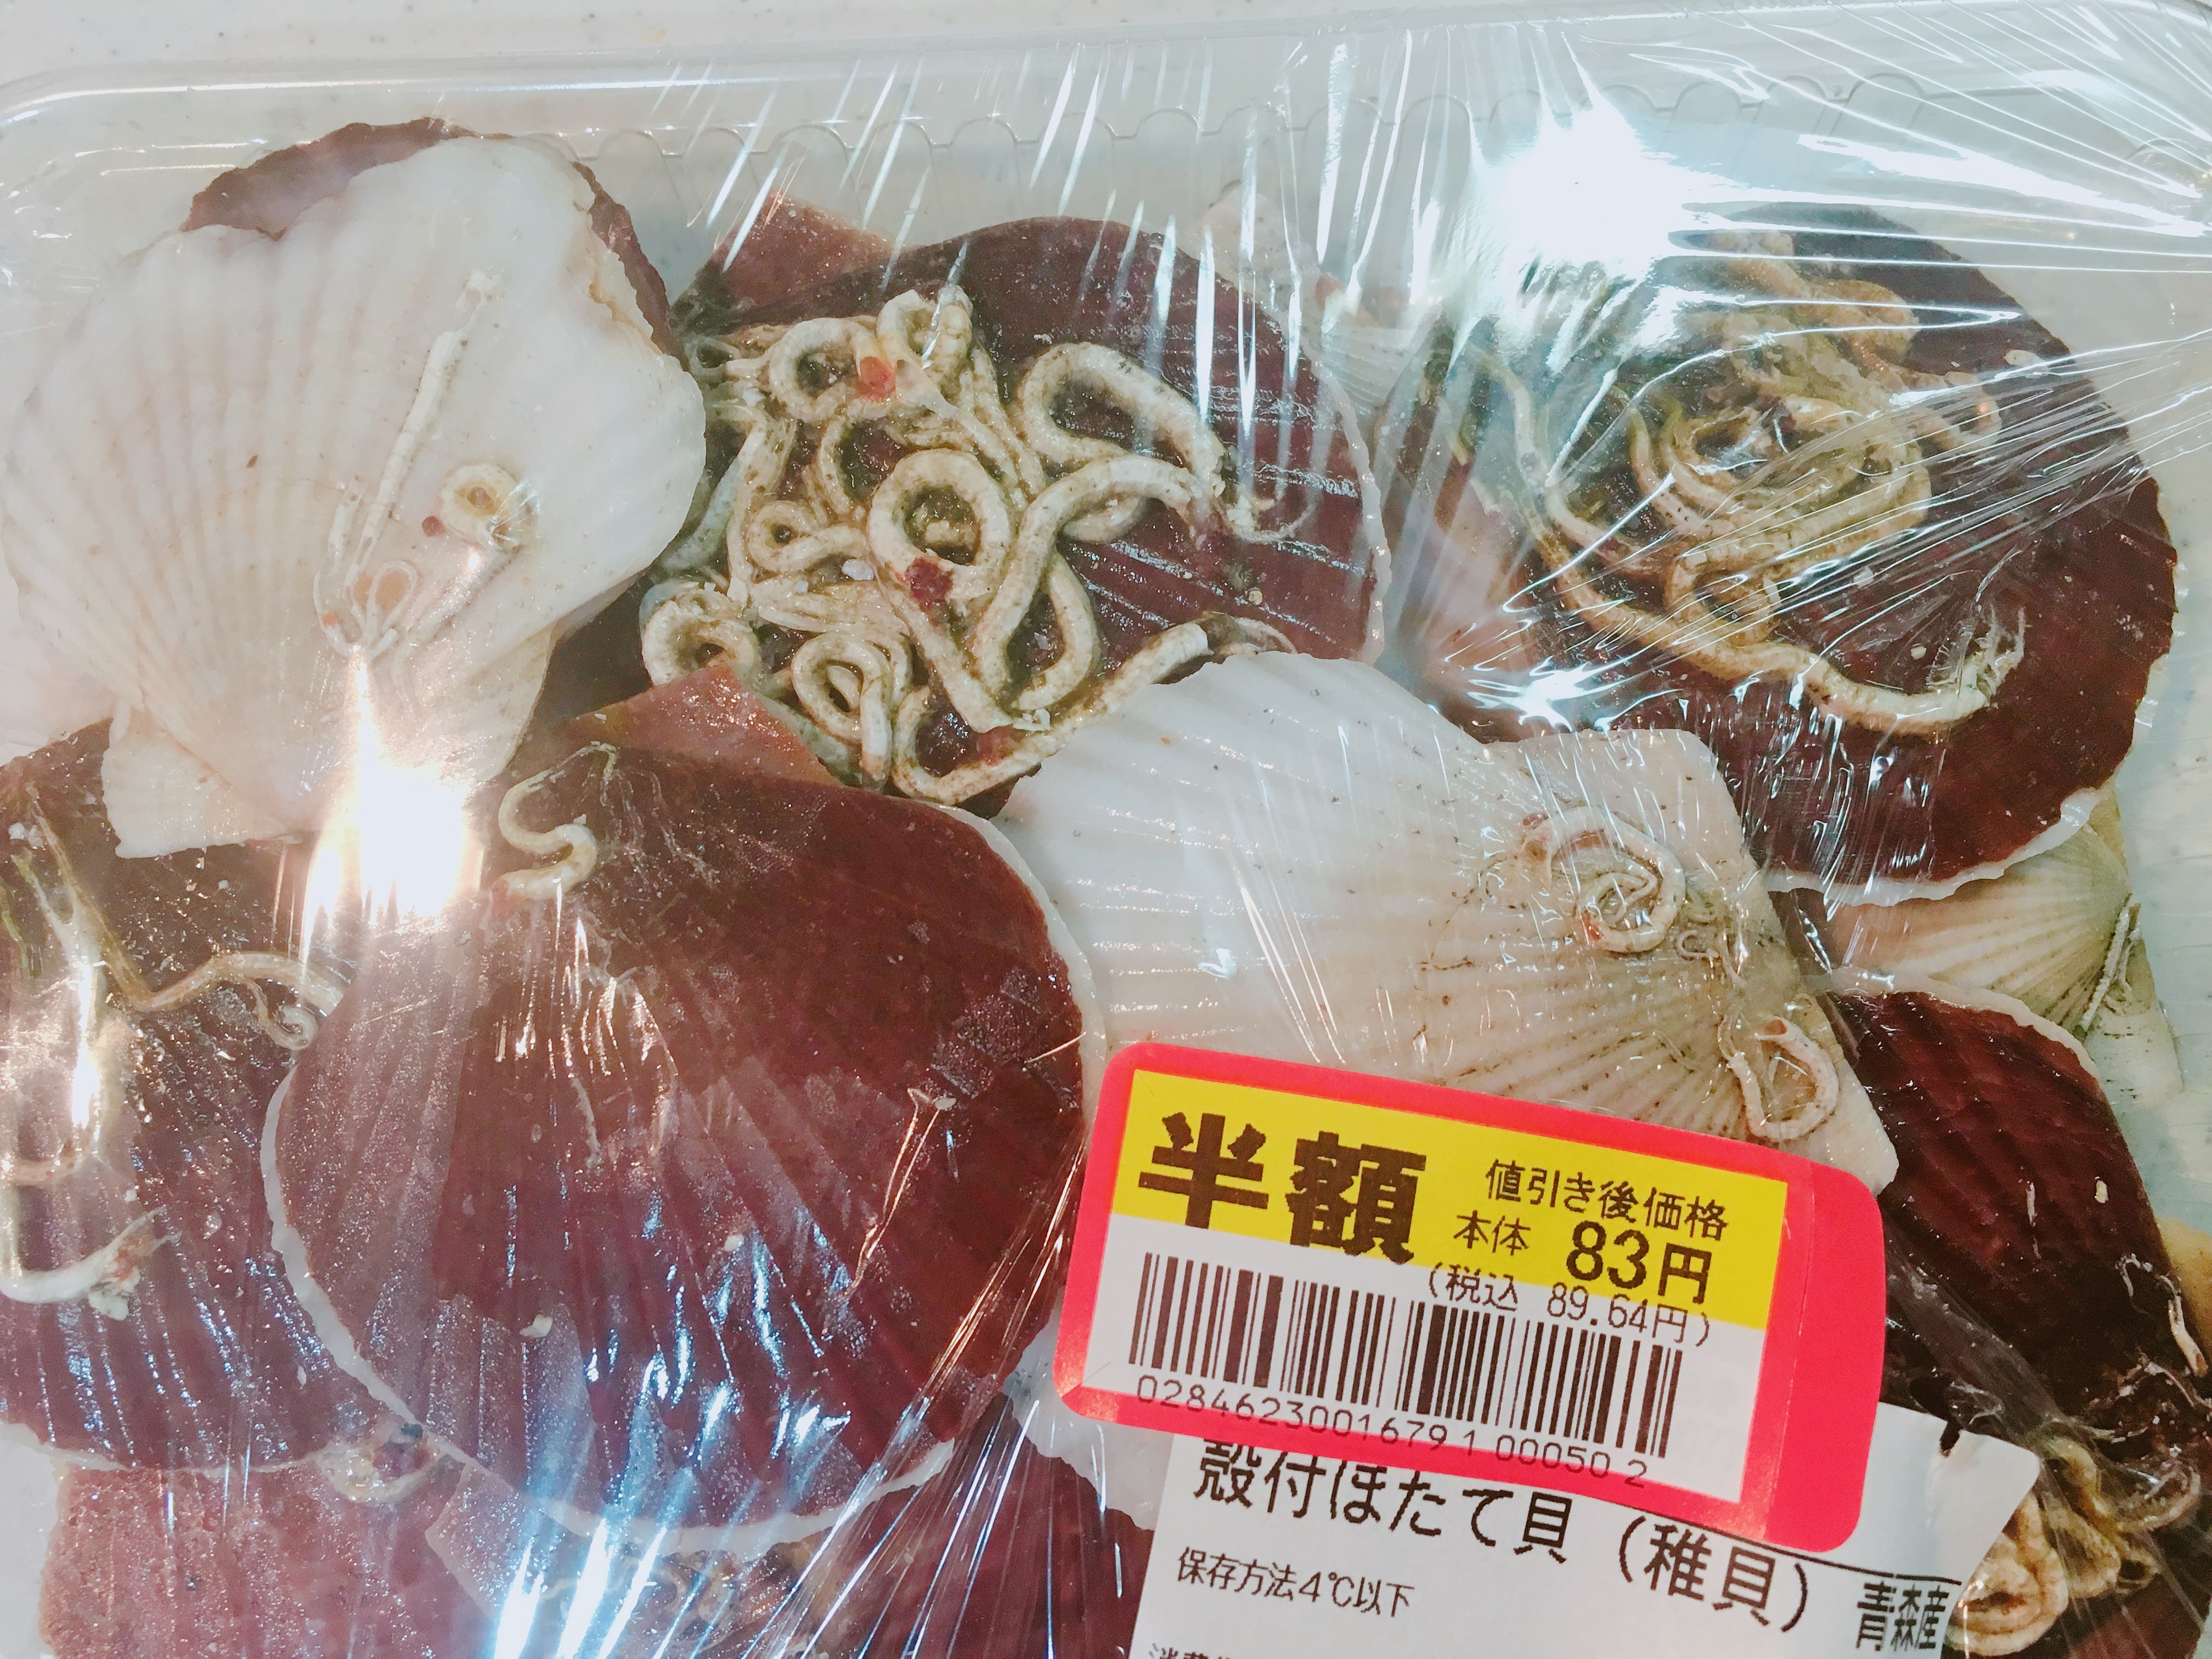 帆立稚貝は今が旬 意外と処理も簡単で美味しいんだよ 東京在住アラサー女子の口下手ブログ